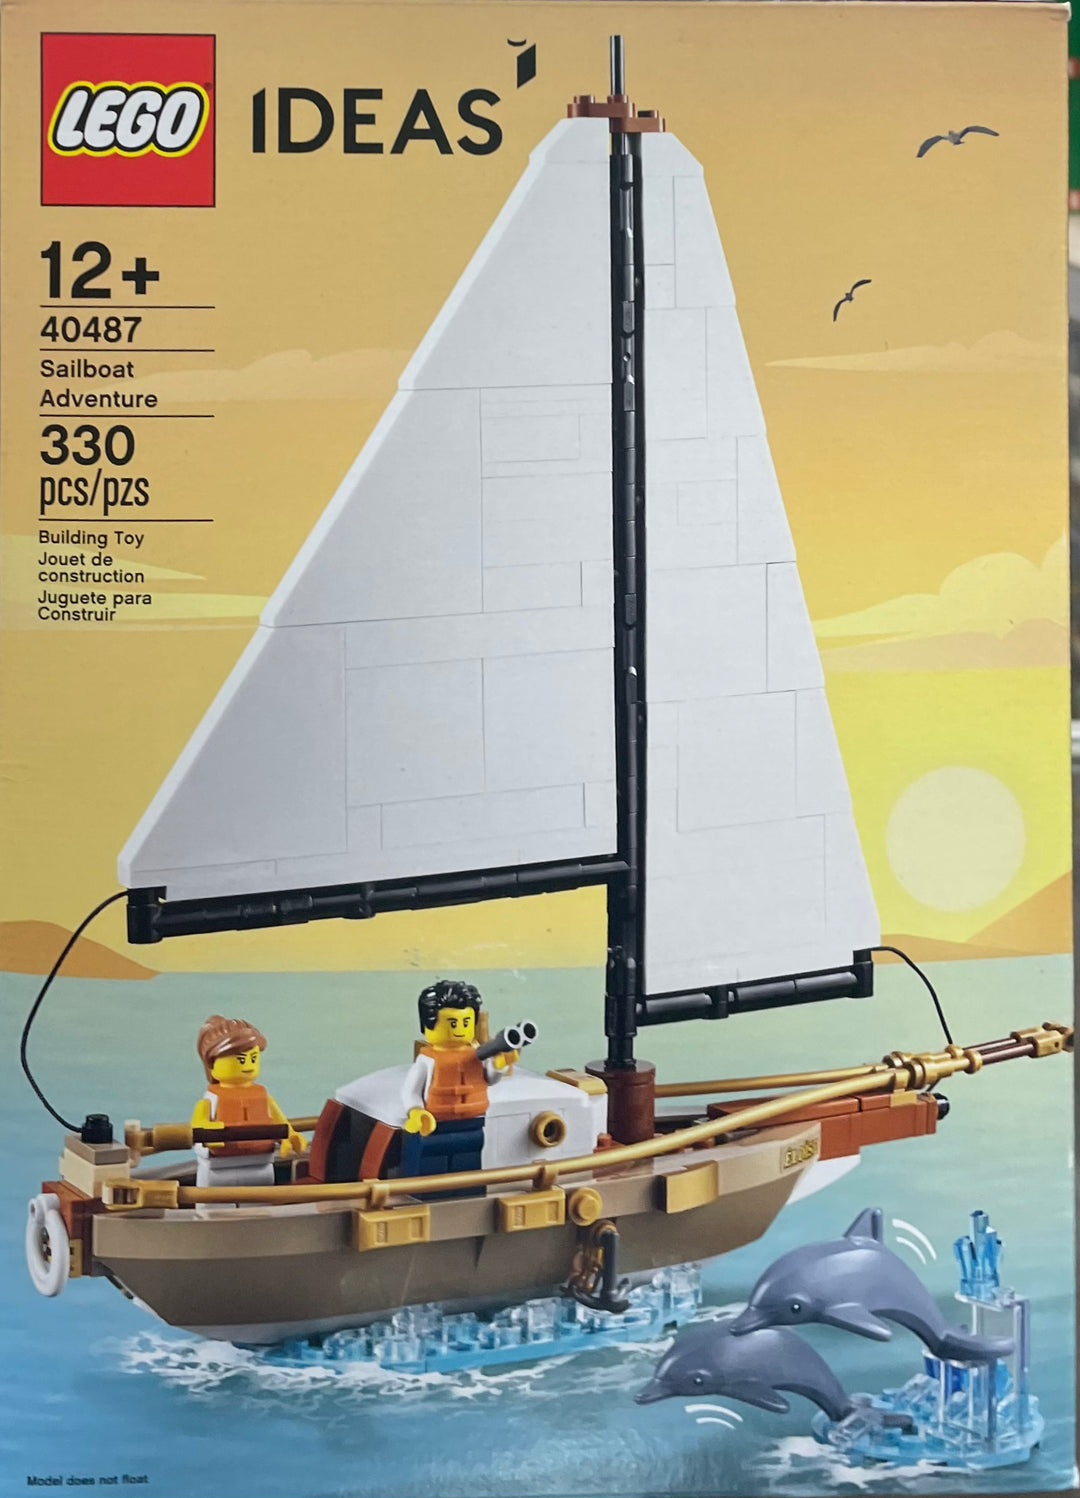 Sailboat Adventure, 40487-1